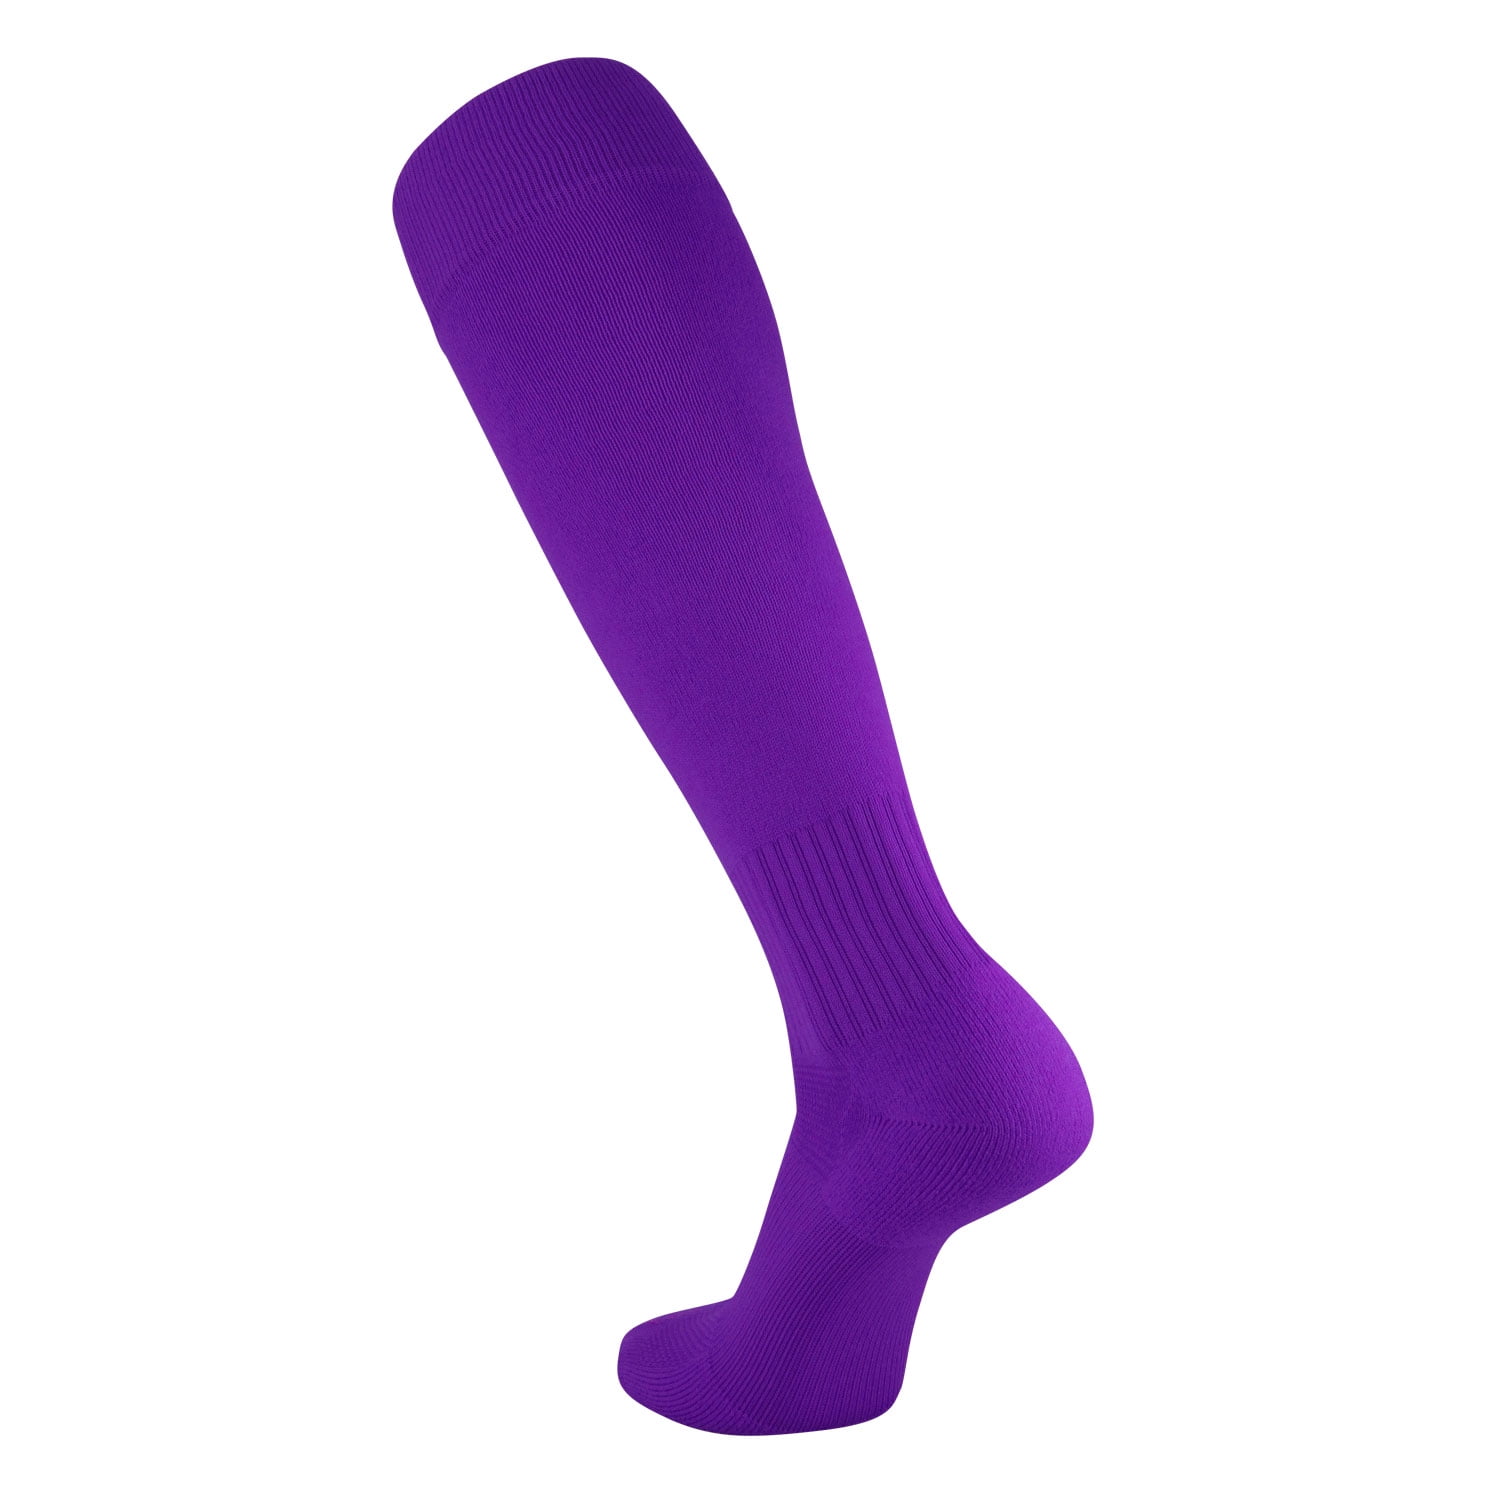 Pair Of Socks For Men - Soccer Socks - Football Socks - Solid Plain Soccer  Socks - Colour Random